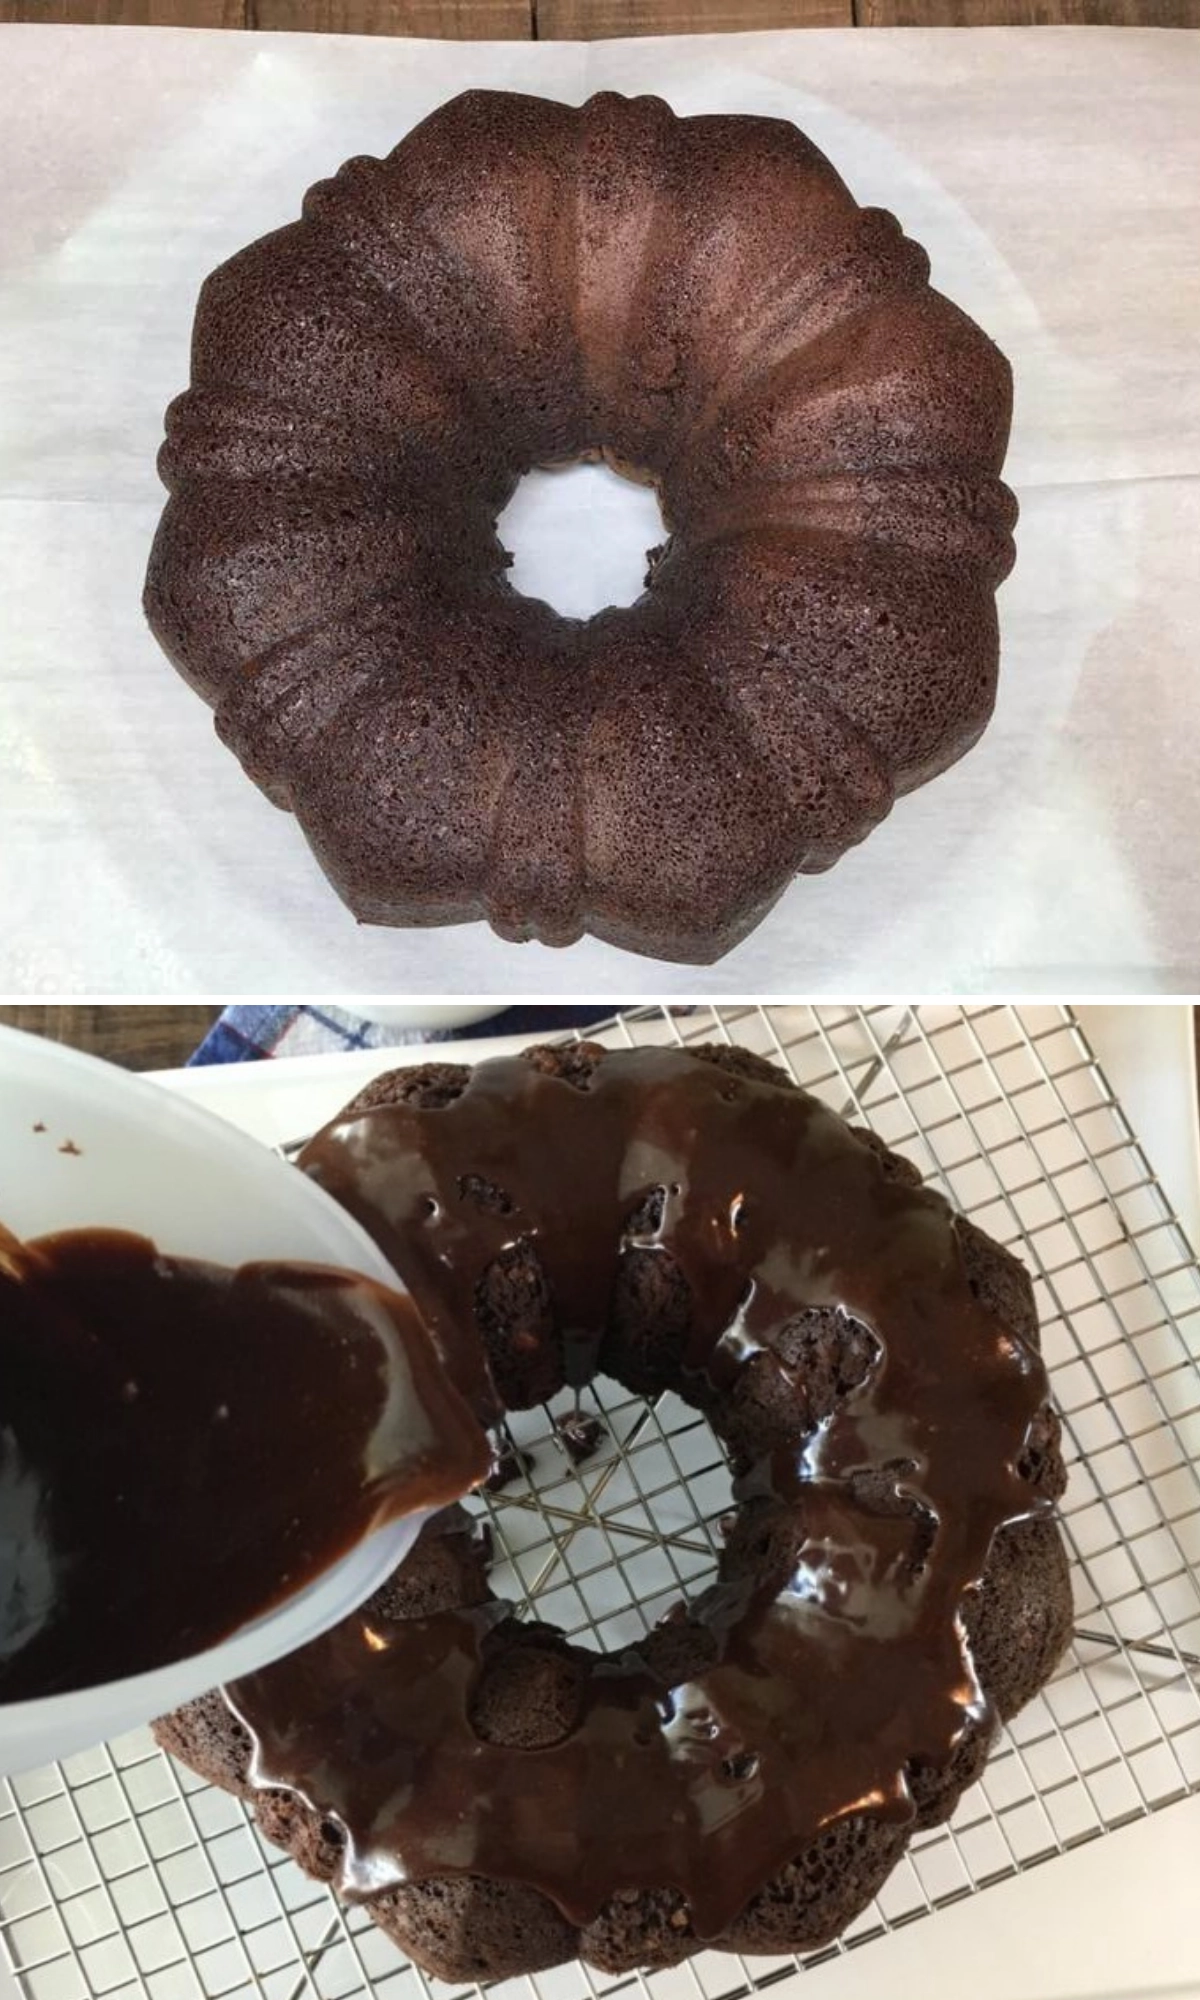 Chocolate cake and glaze. 